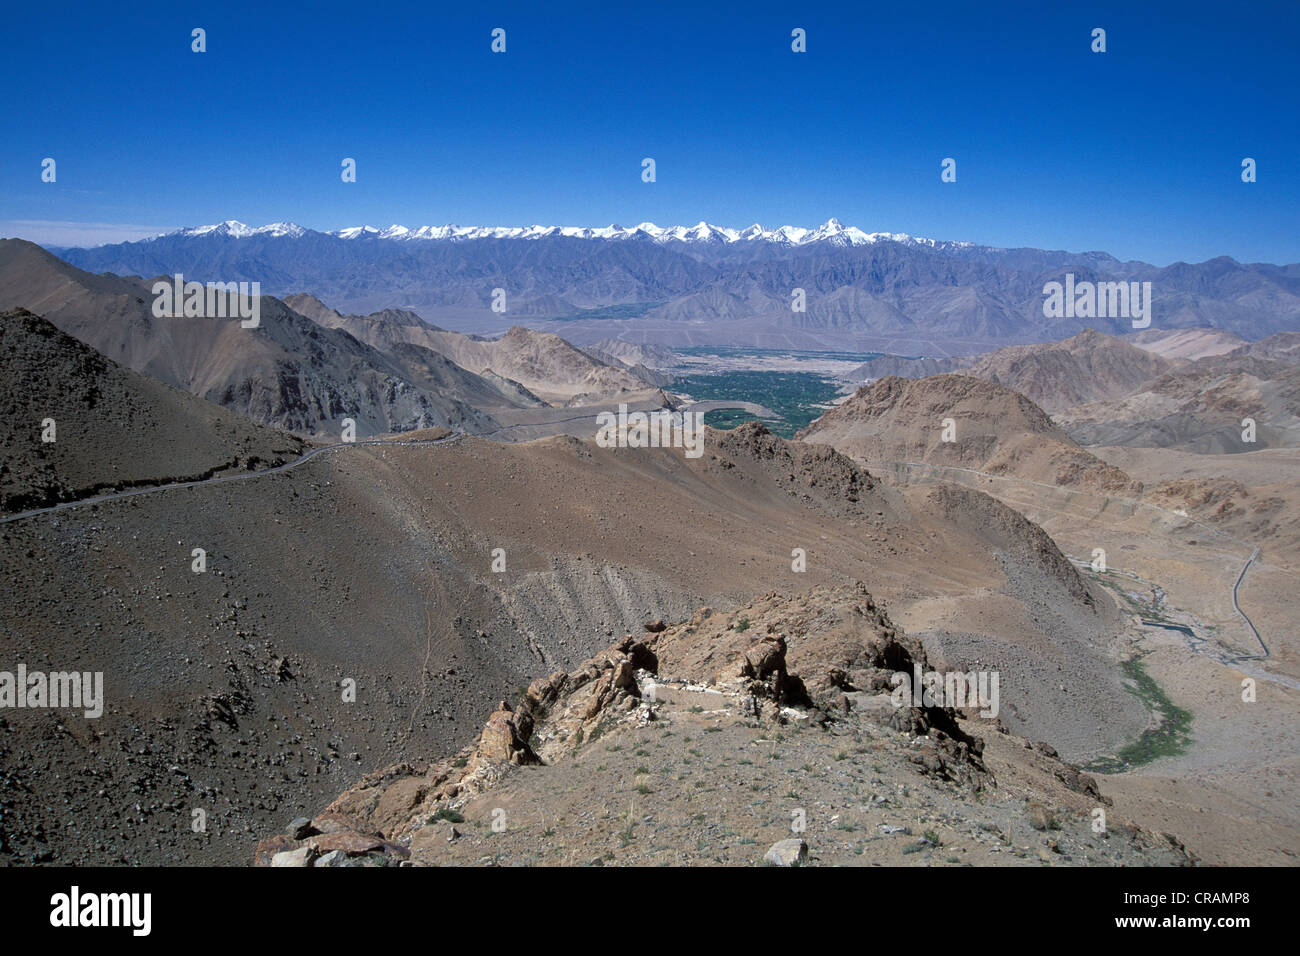 Route menant au col Khardung Khardung La ou, le plus haut col basique dans le monde, le Ladakh, Himalaya Indien Banque D'Images